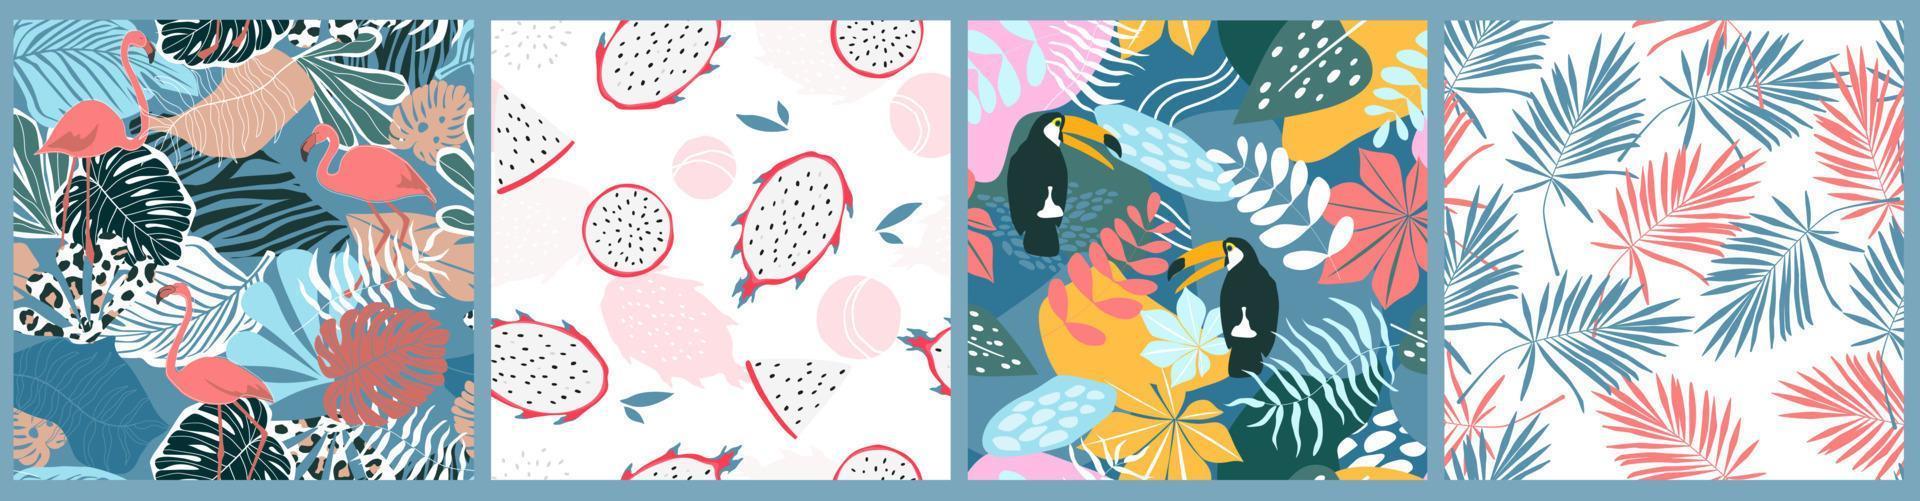 o conjunto é um padrão sem costura com um ornamento exótico tropical com folhas de palmeira e monstera, pássaros tucanos, flamingos. impressão abstrata de verão. gráficos vetoriais. vetor